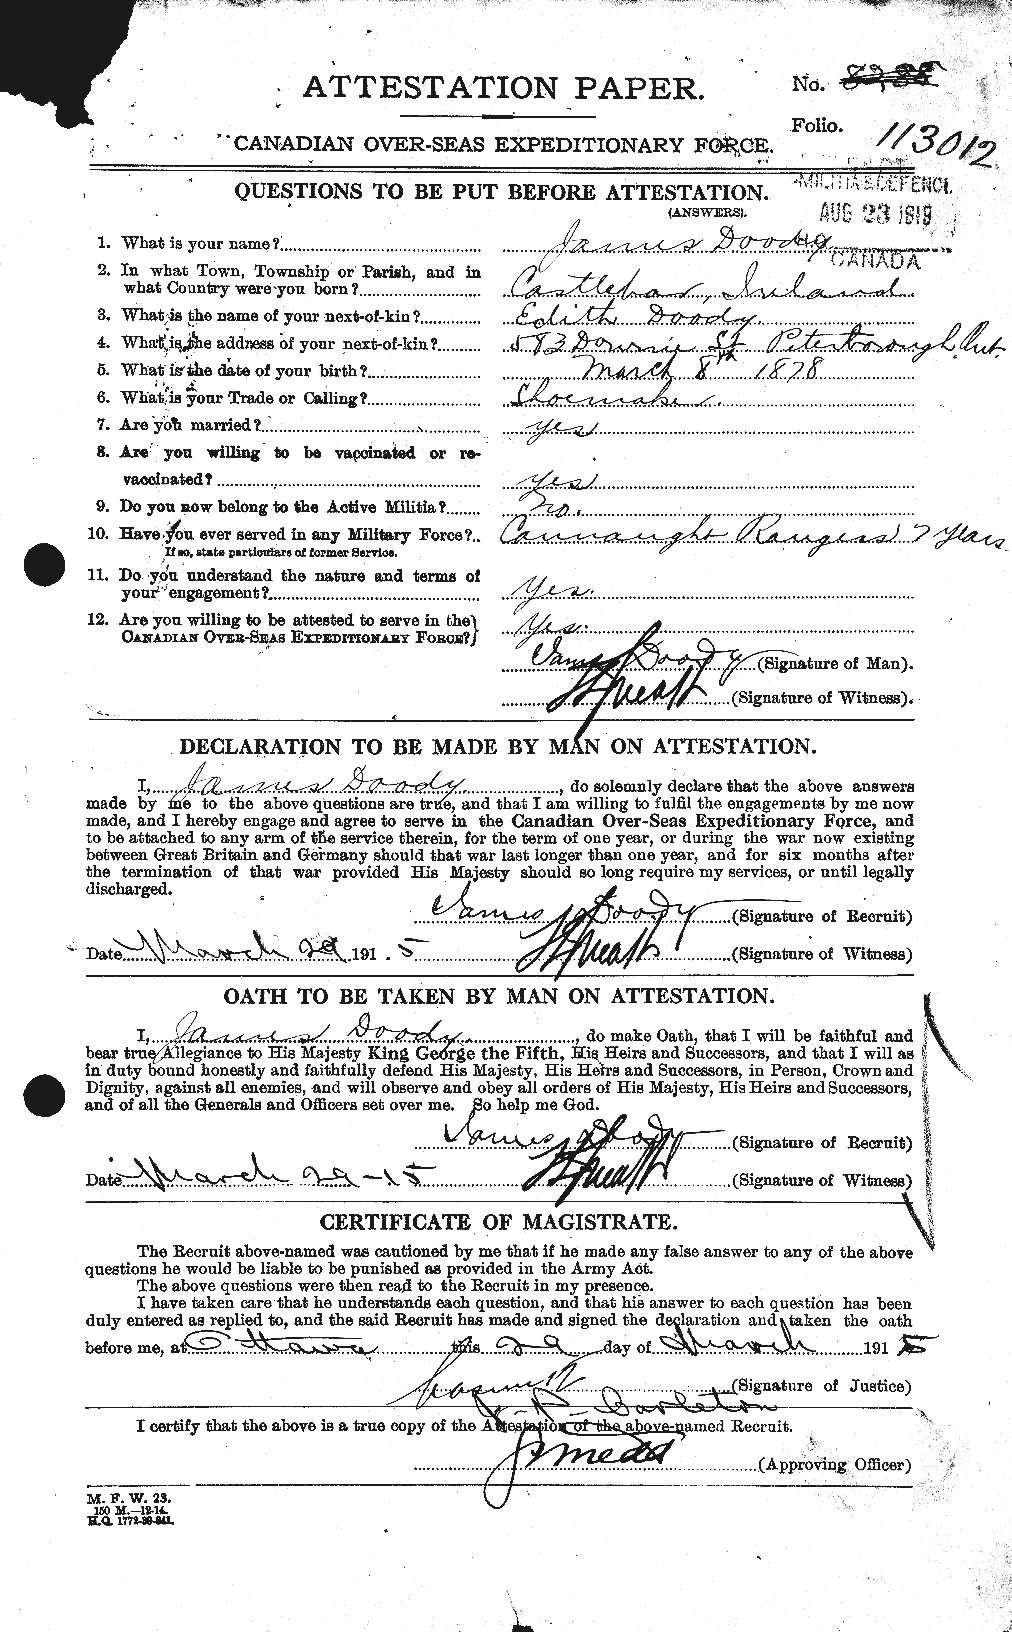 Dossiers du Personnel de la Première Guerre mondiale - CEC 298054a